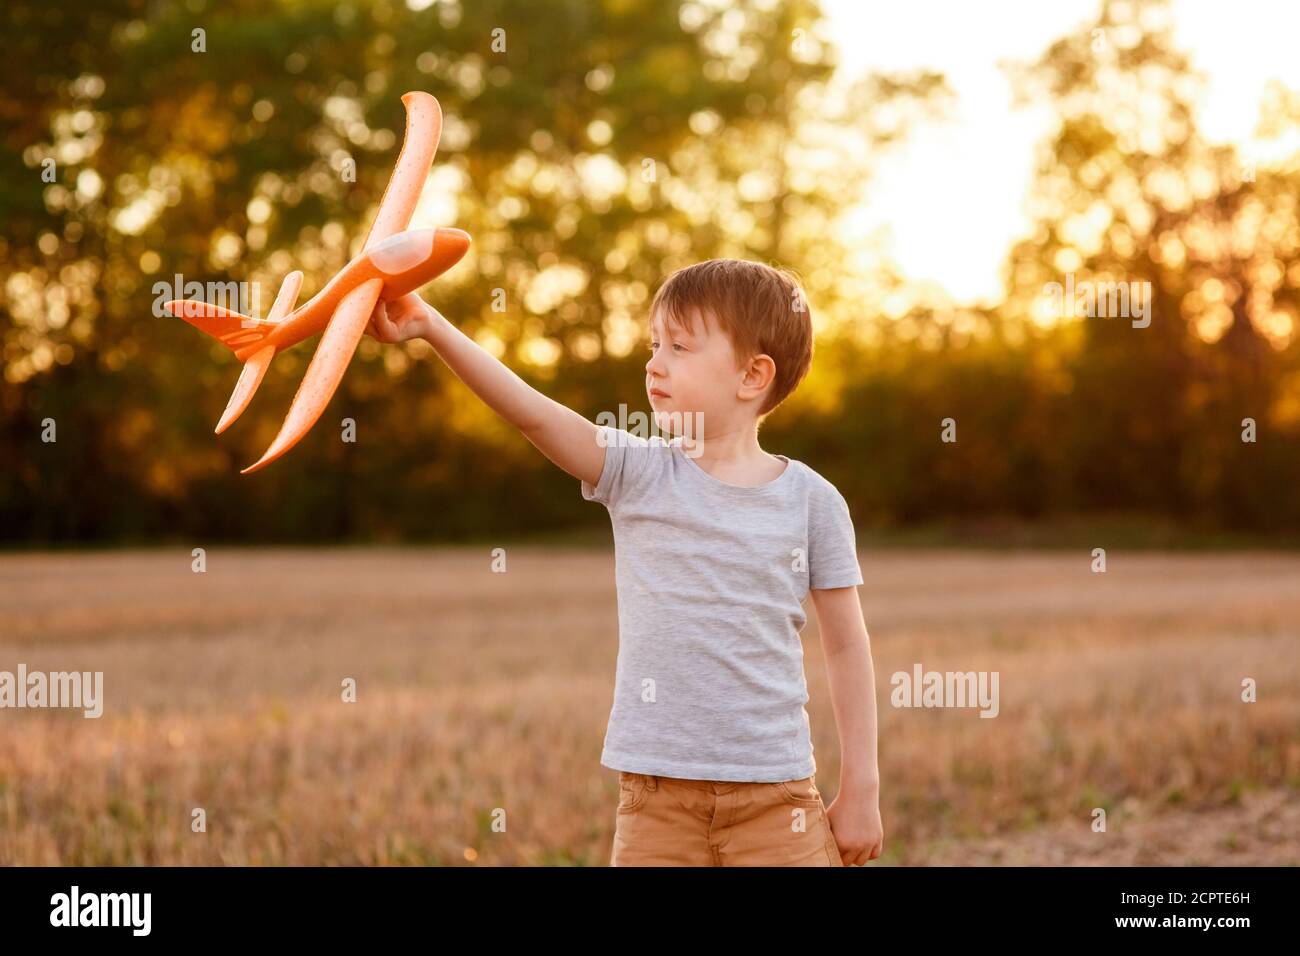 Un enfant heureux court avec un avion jouet sur un fond de coucher de soleil sur un champ. Le concept d'une famille heureuse. Rêves d'enfance Banque D'Images